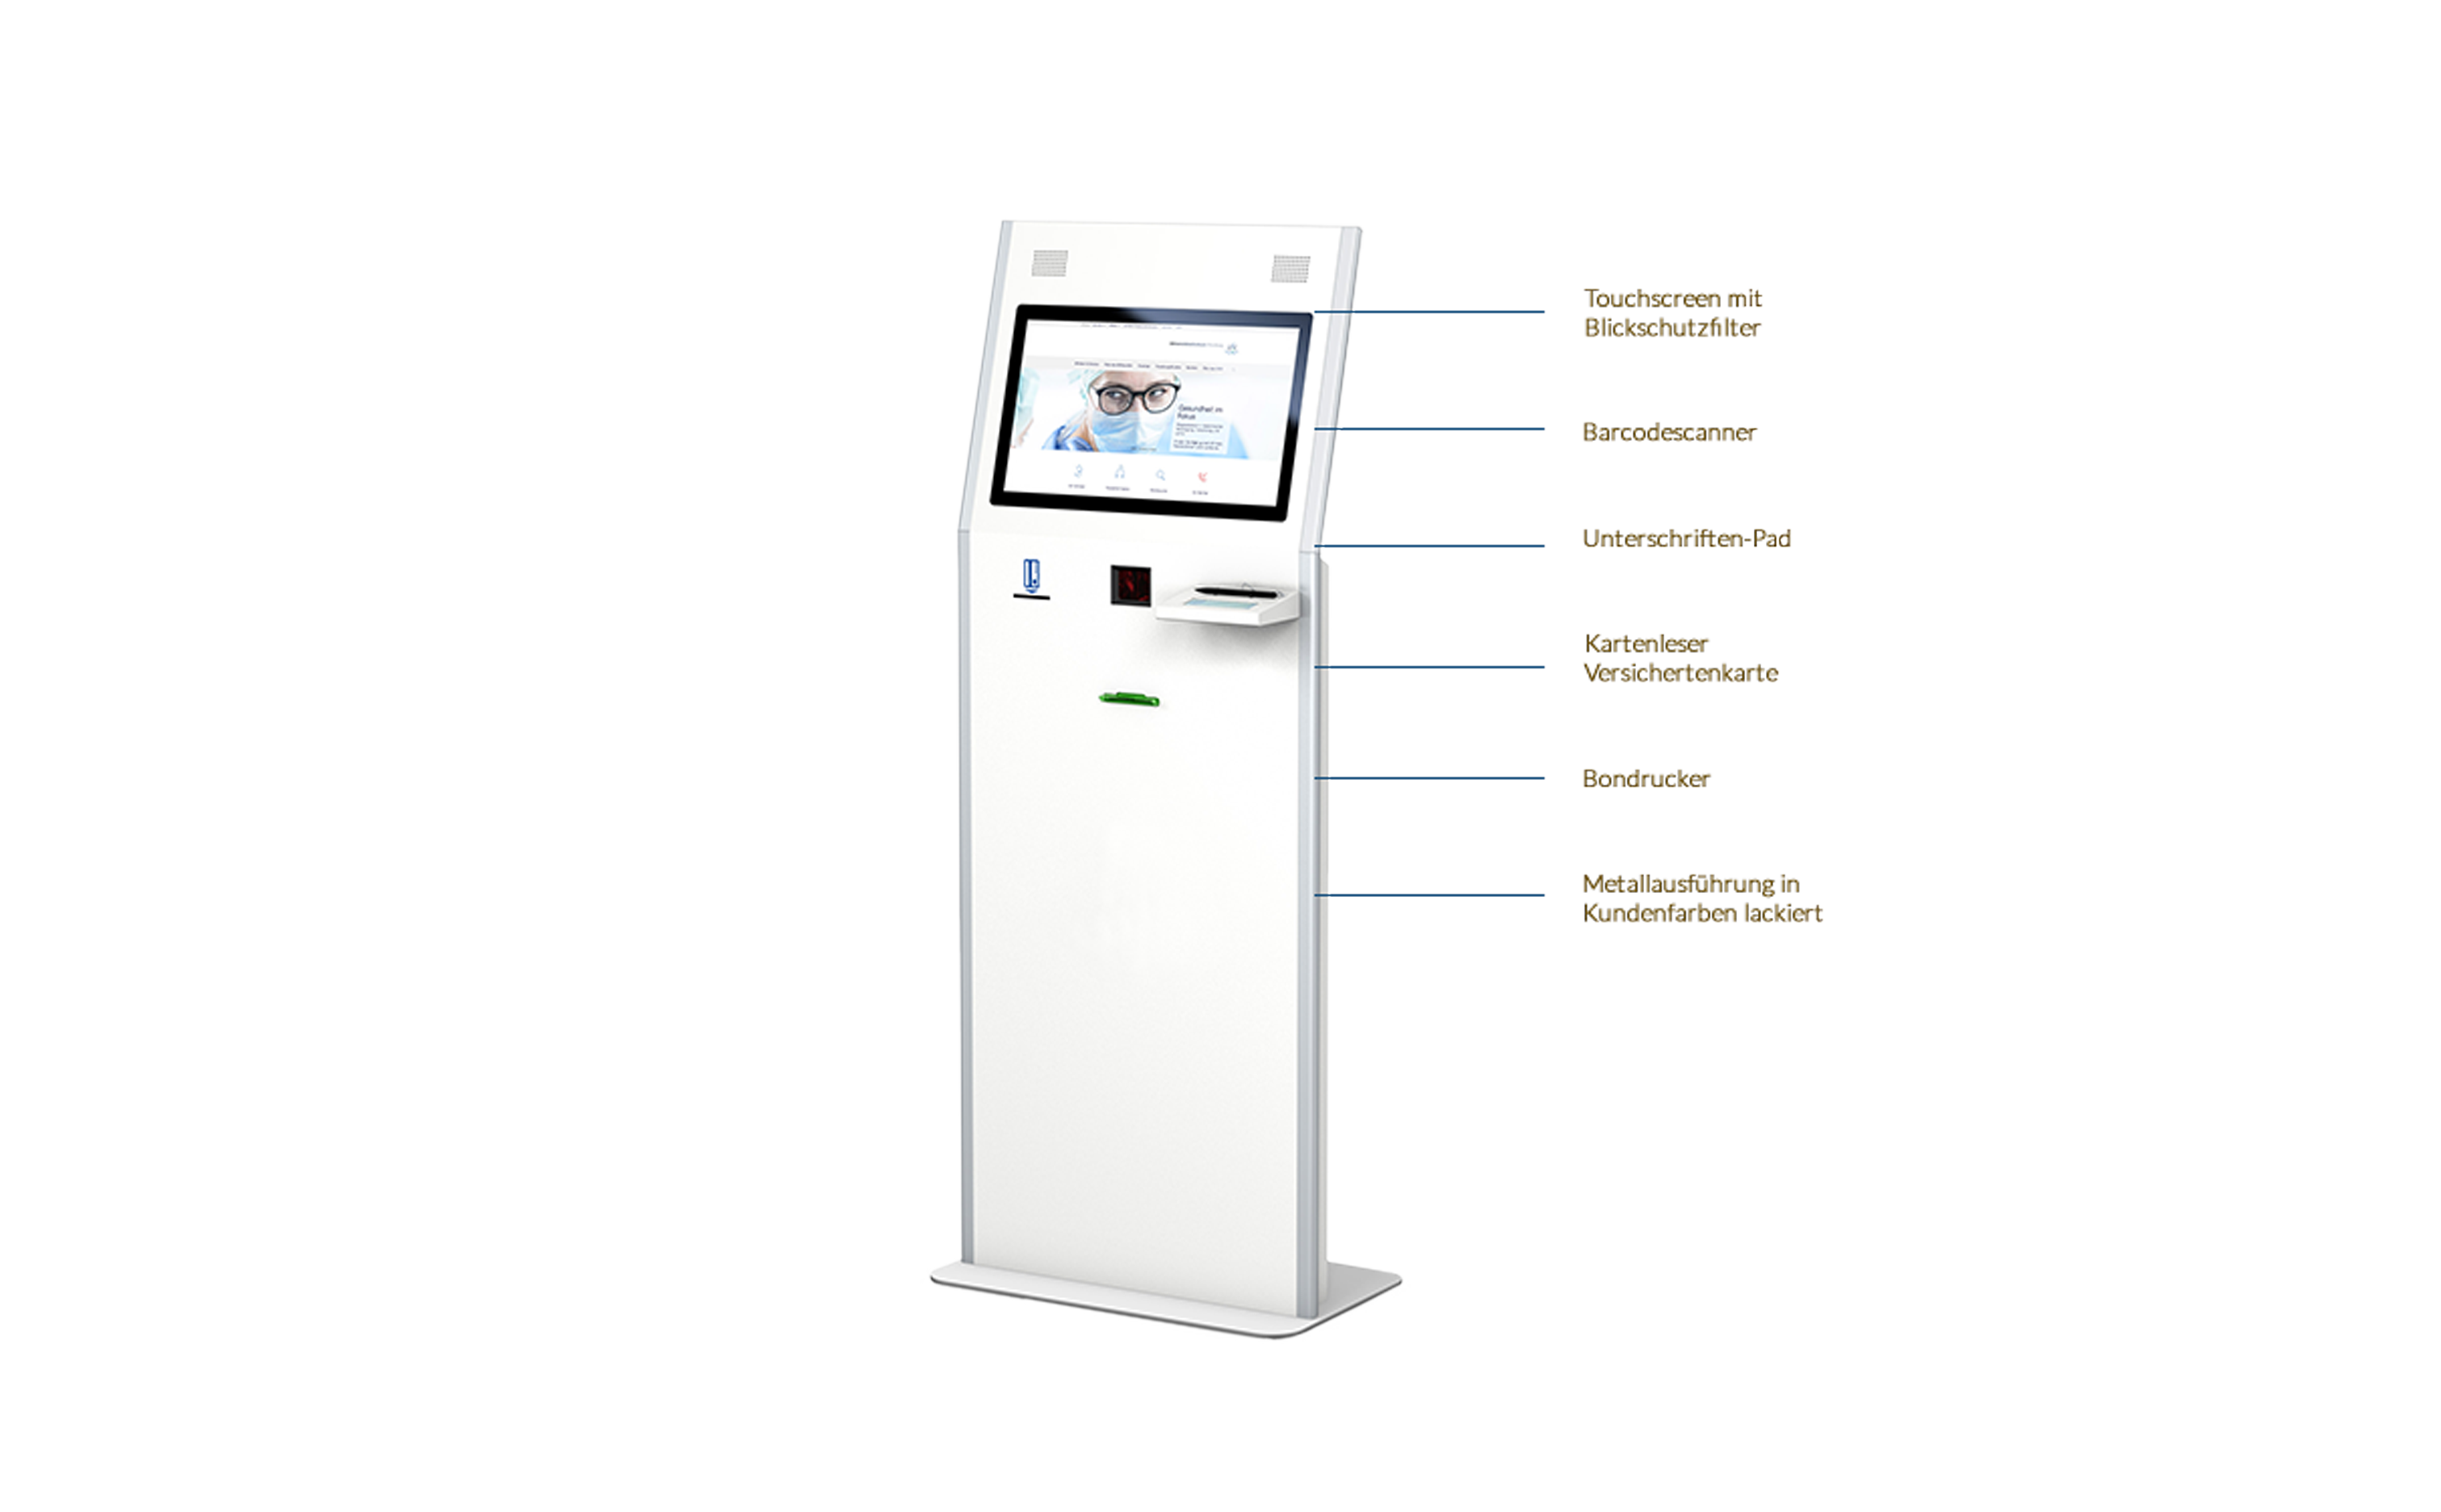 POLAVIS Kiosksysteme für den Online Check-In ins Krankenhaus